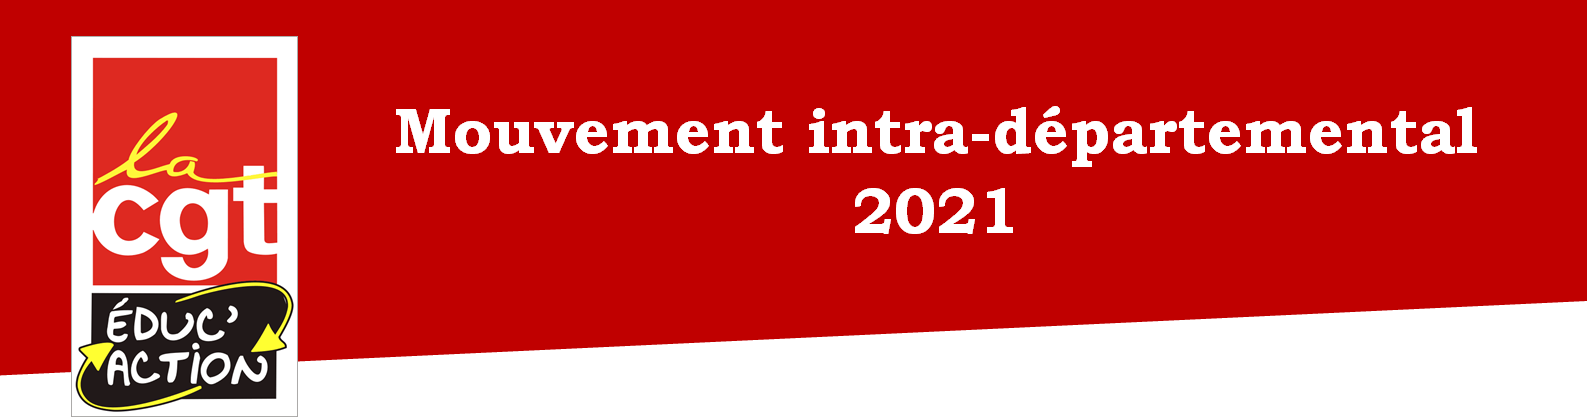 Mouvement intra-départemental 2021